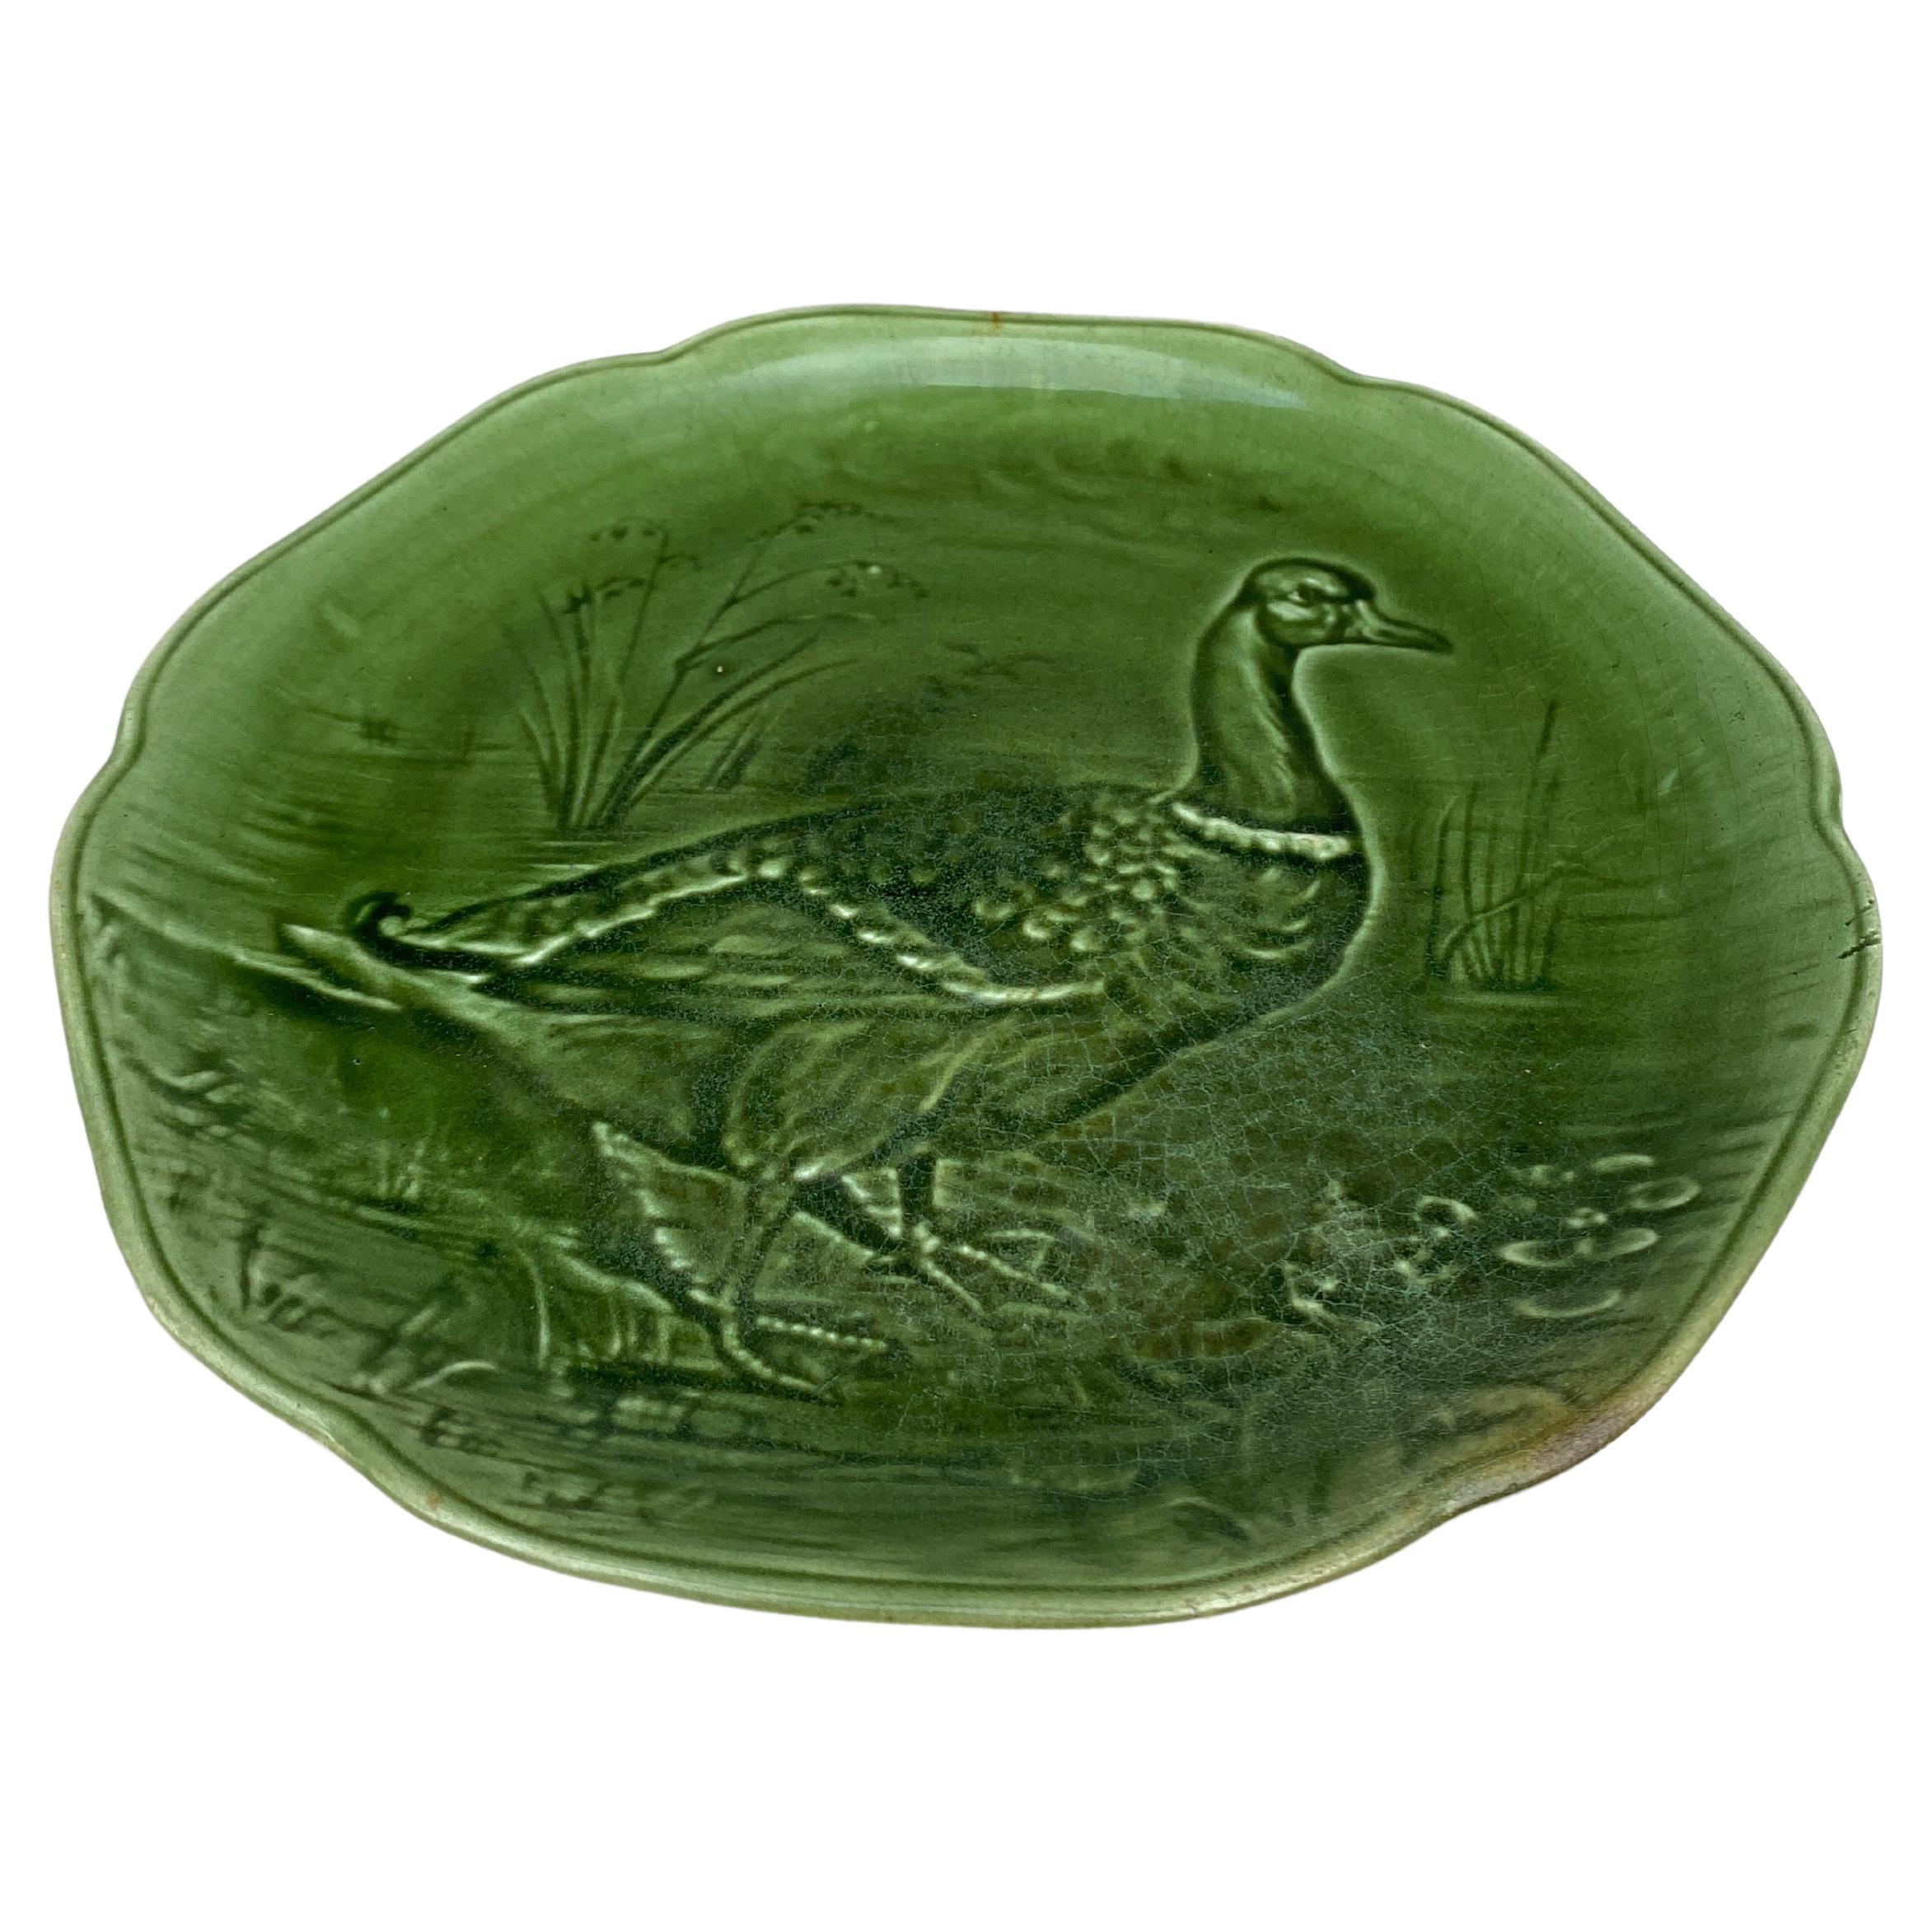 Assiette à canard colvert en majolique verte du XIXe siècle Hippolyte Boulenger Choisy-le-Roi, vers 1890.
La manufacture de Choisy-le-Roi était l'une des plus importantes à la fin du 19ème siècle, elle produisait des céramiques de très haute qualité